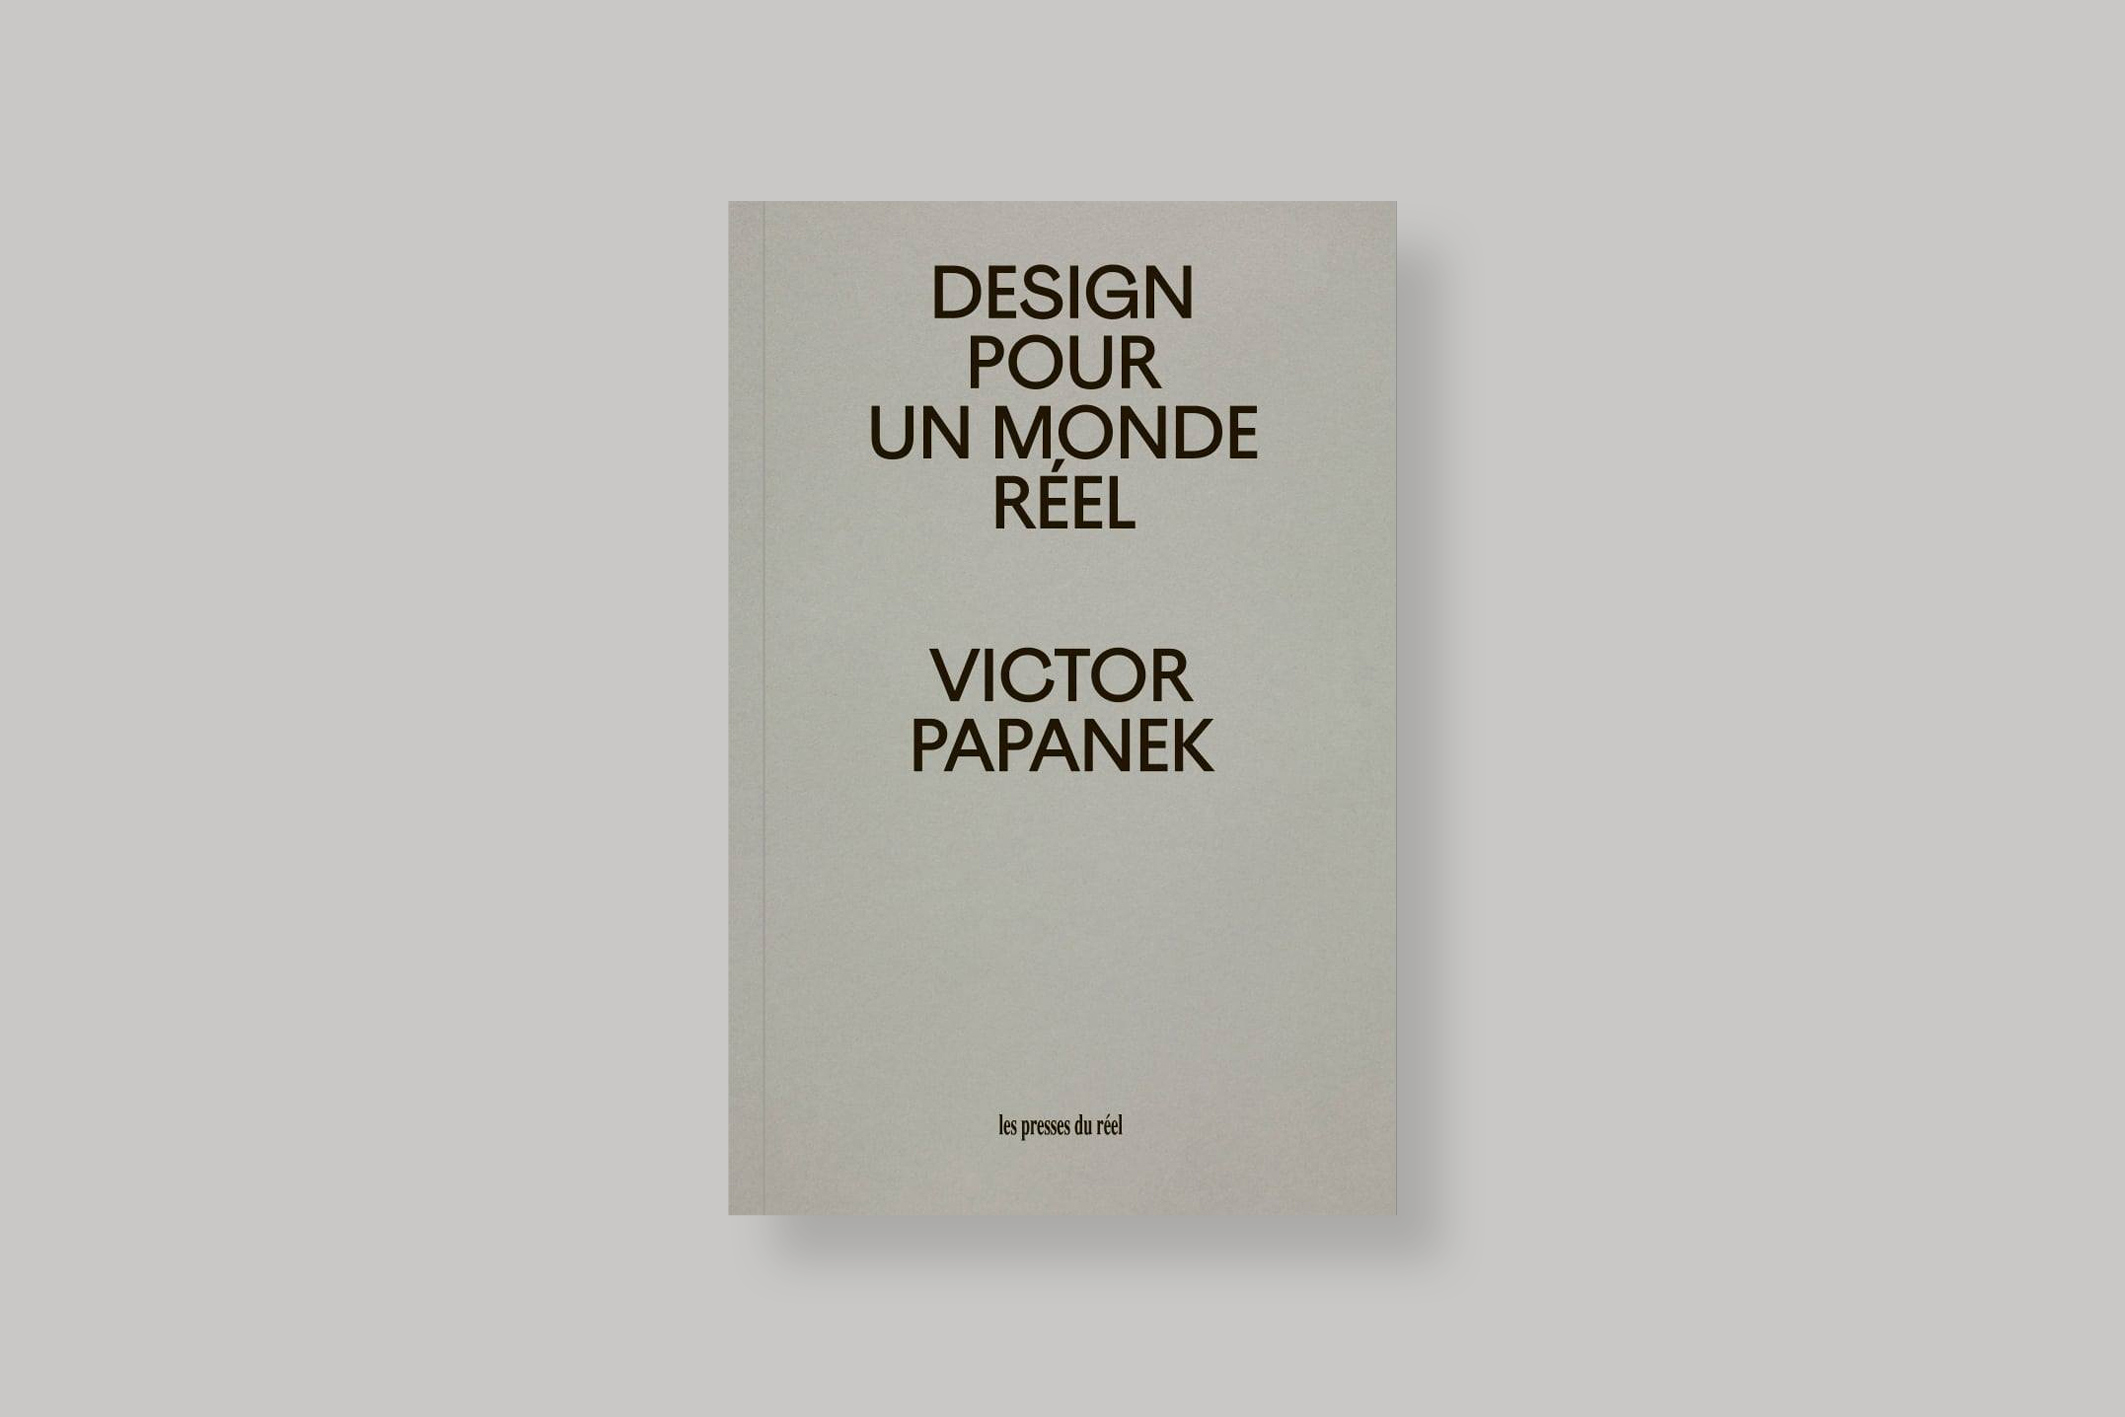 Design-pour-un-monde-reel-victor-papanek-presses-du-reel-cover